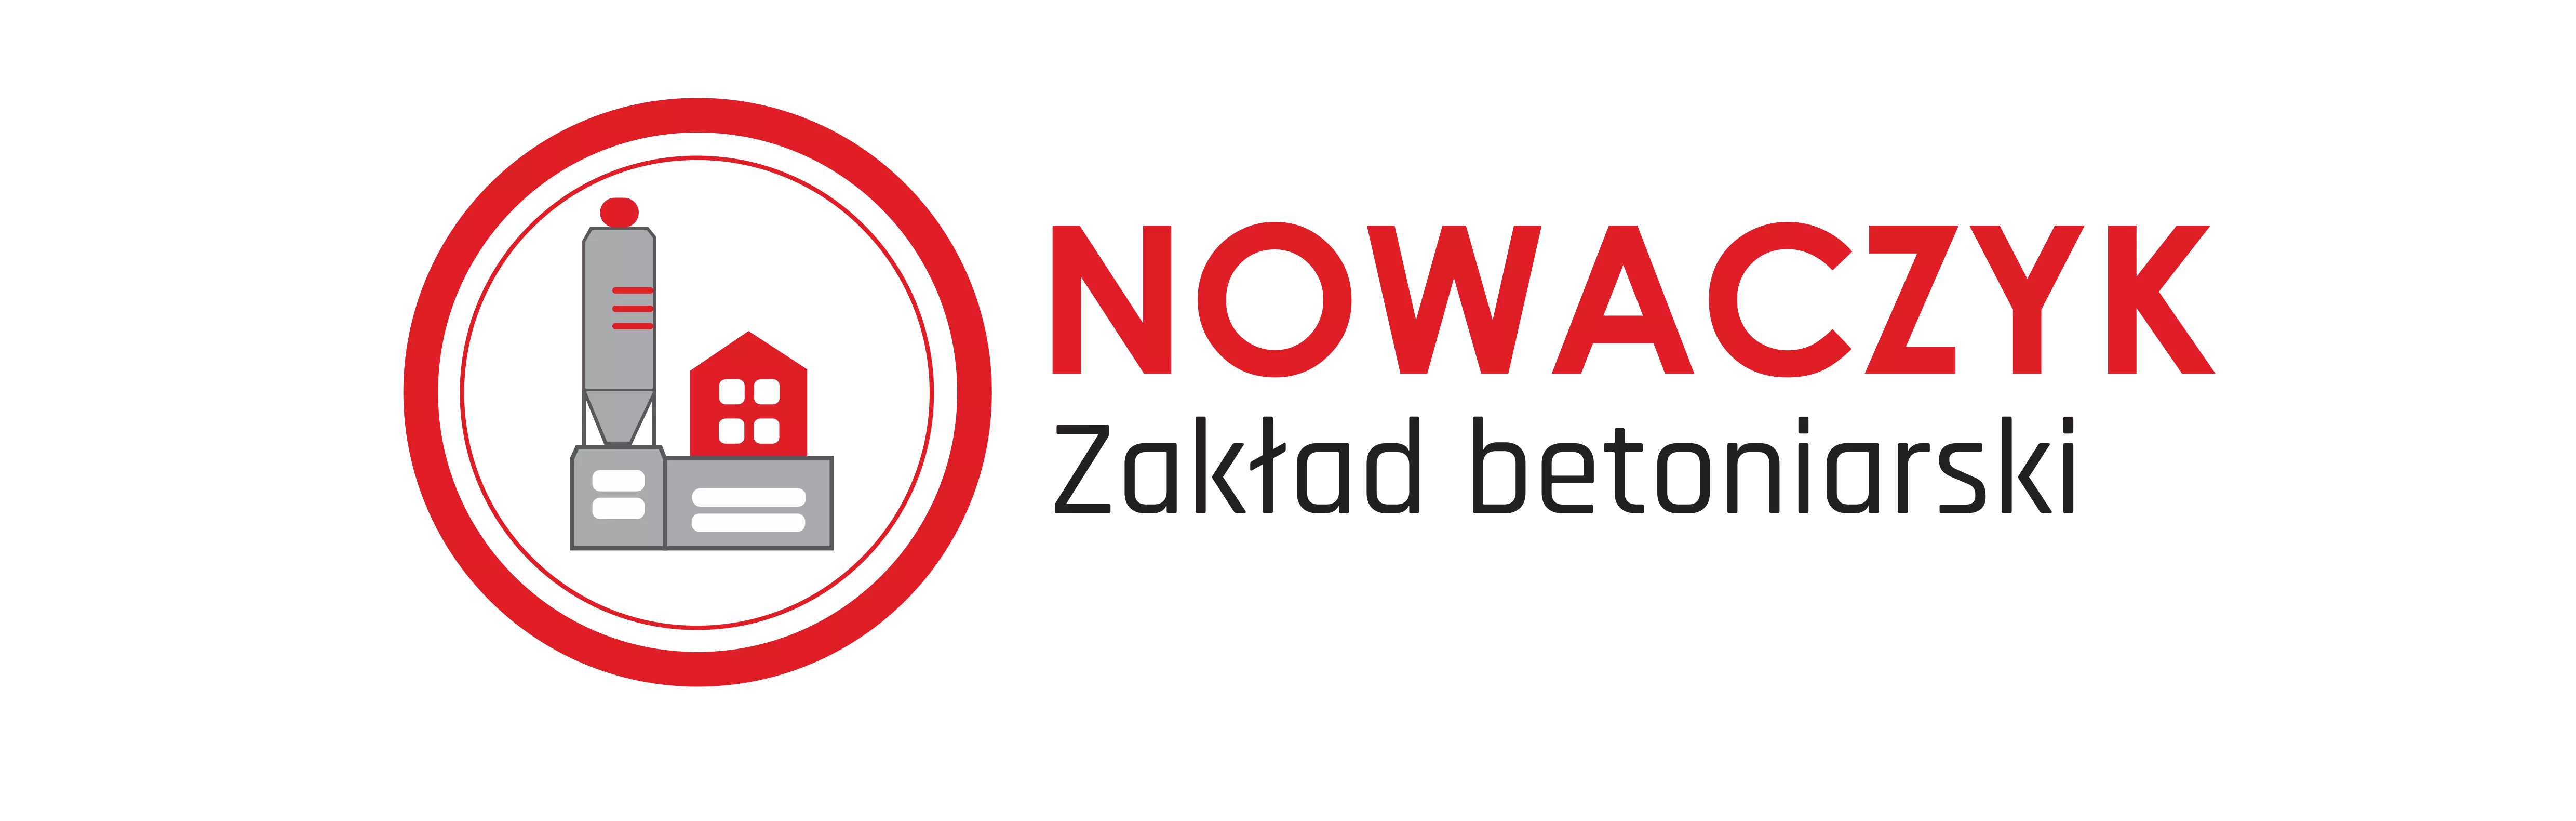 Dawid Nowaczyk Zakład Betoniarski